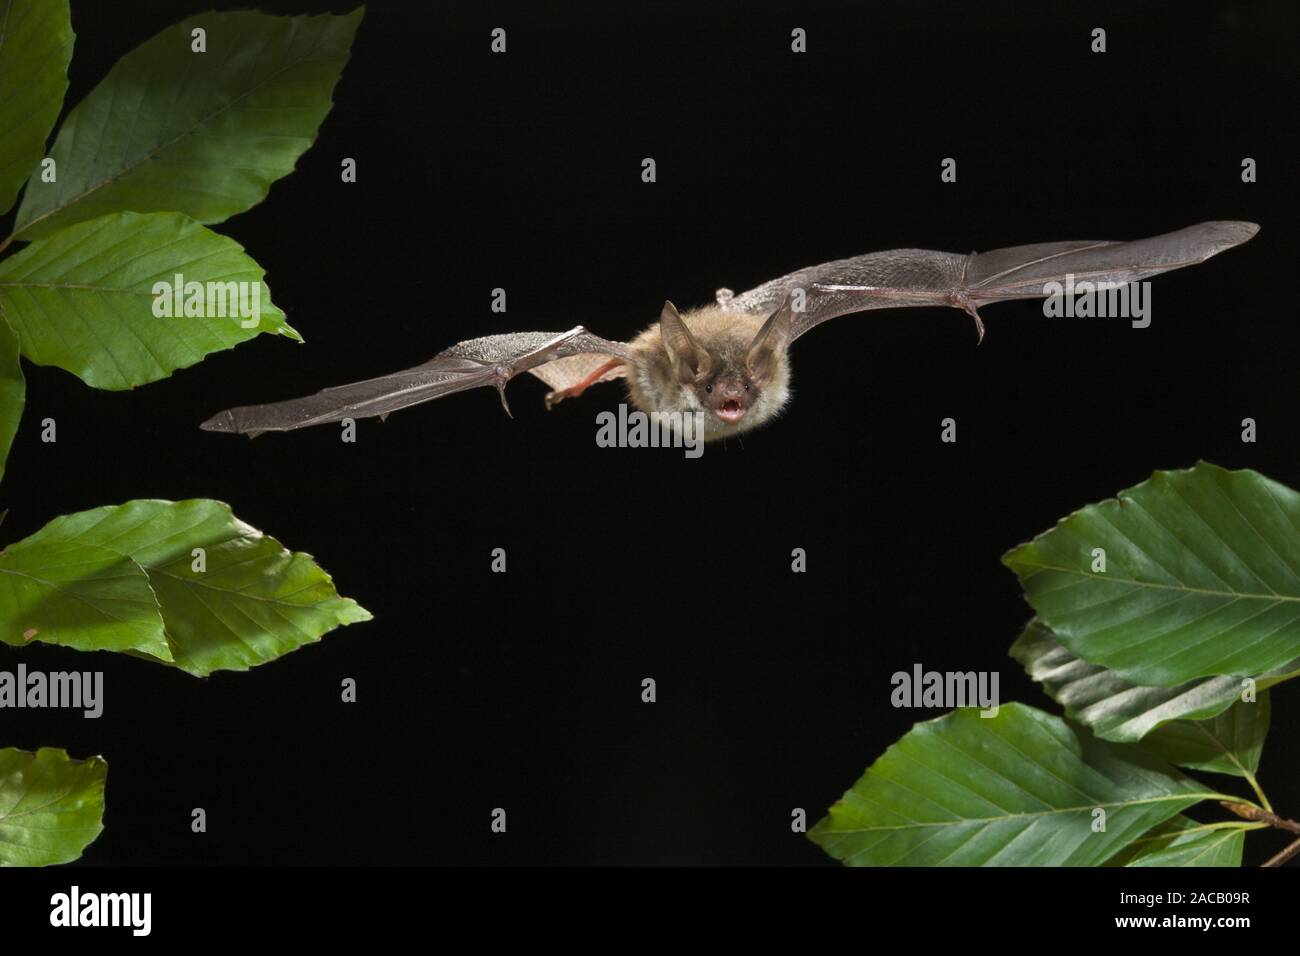 Bechstein bat (Myotis bechsteinii), Bechstein's bat Stock Photo